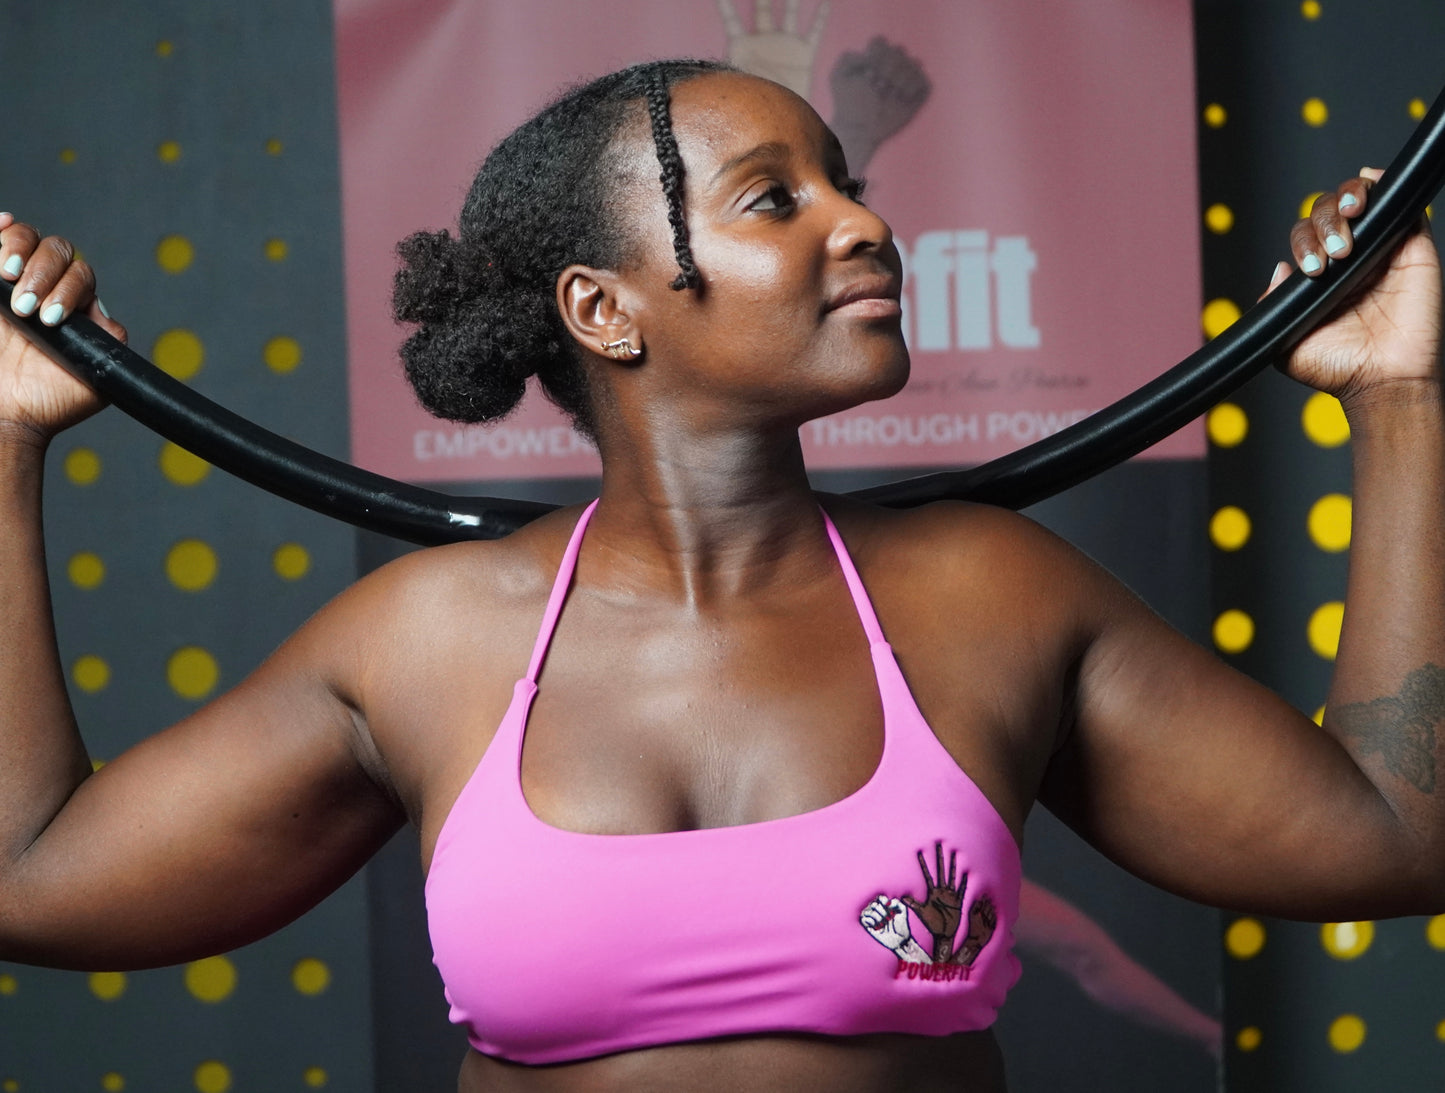 POWERfit Pink Cross back sports bra